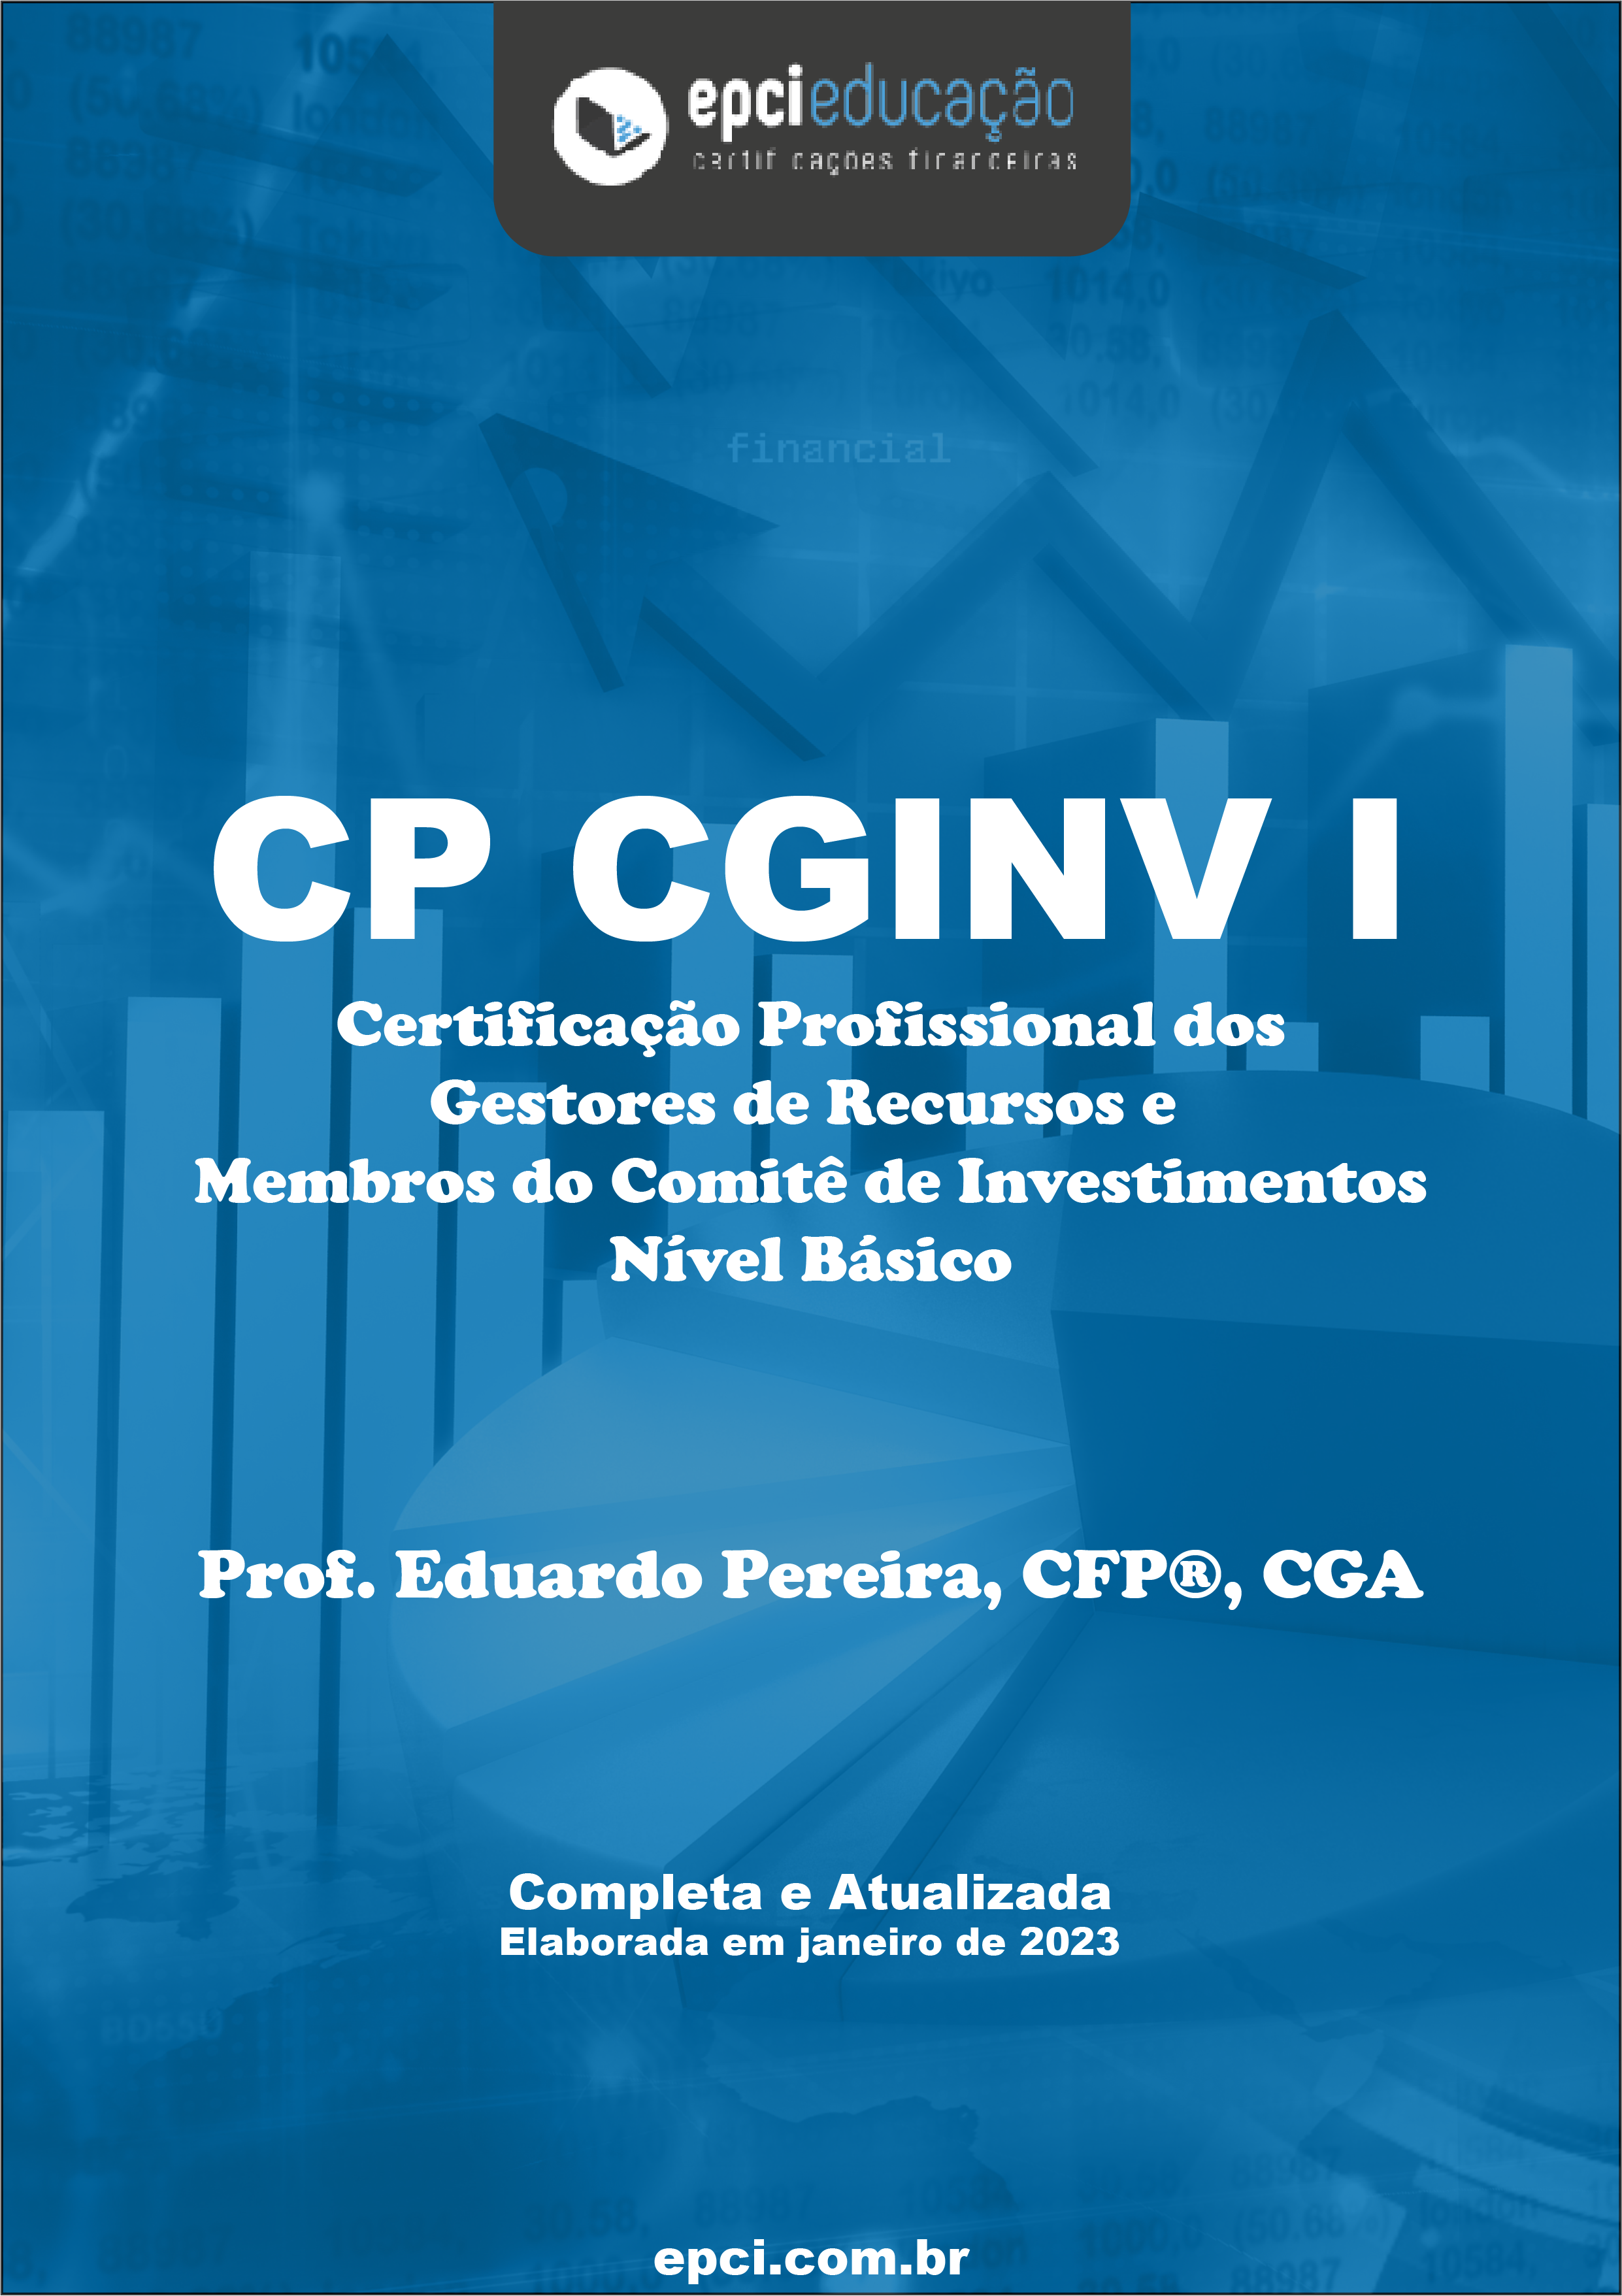 Apostila Gratuita para Certificação de Gestores e Membros do Comitê de Investimentos (CGINV I).